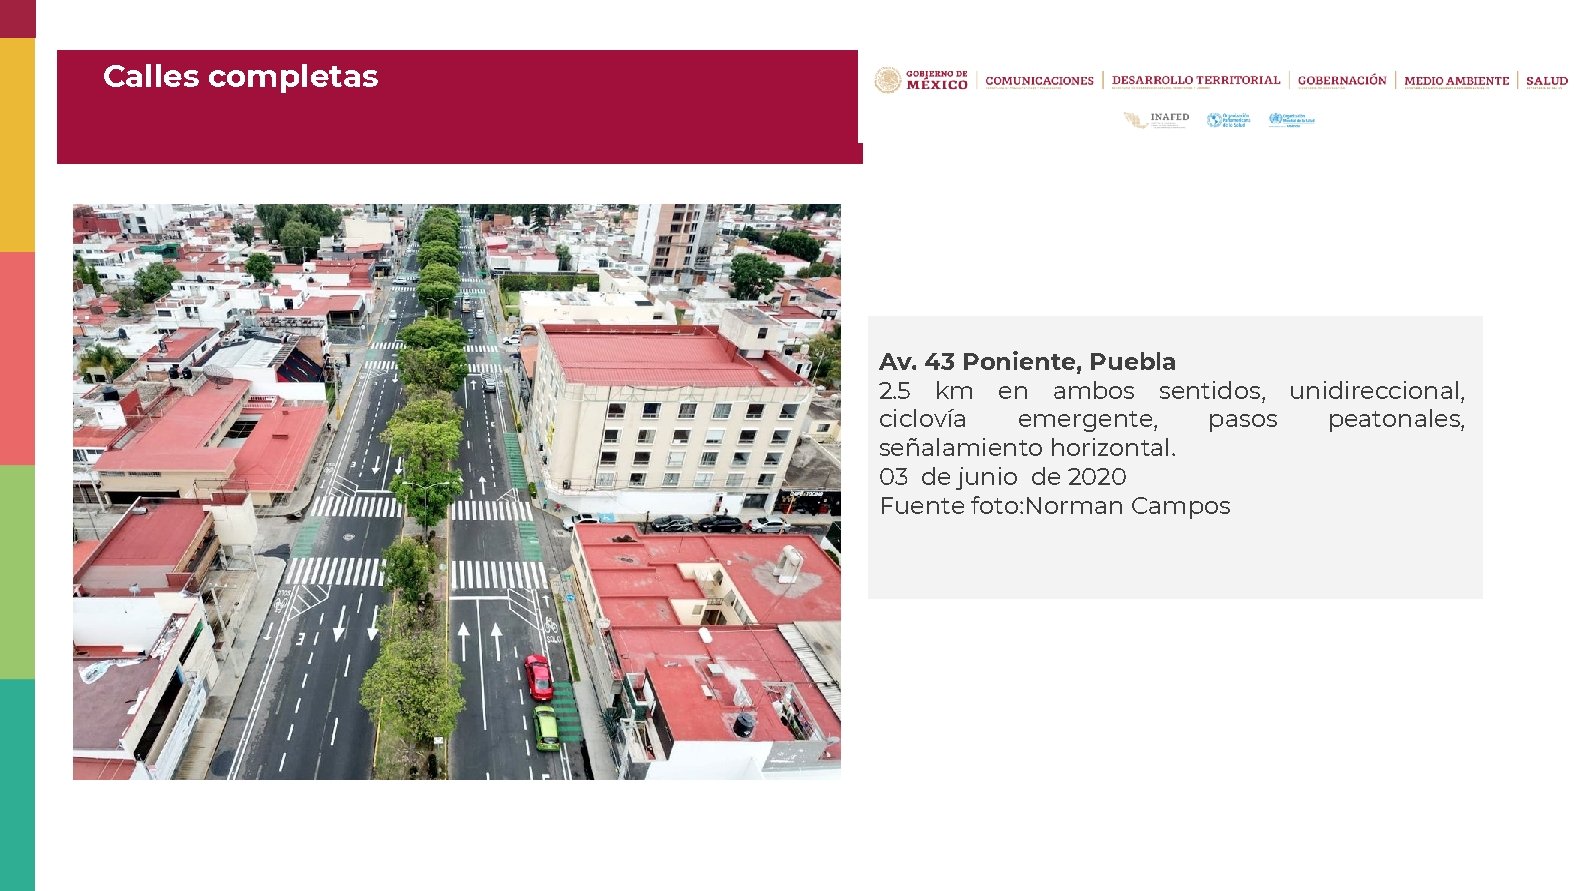 Calles completas Av. 43 Poniente, Puebla 2. 5 km en ambos sentidos, unidireccional, ciclovía